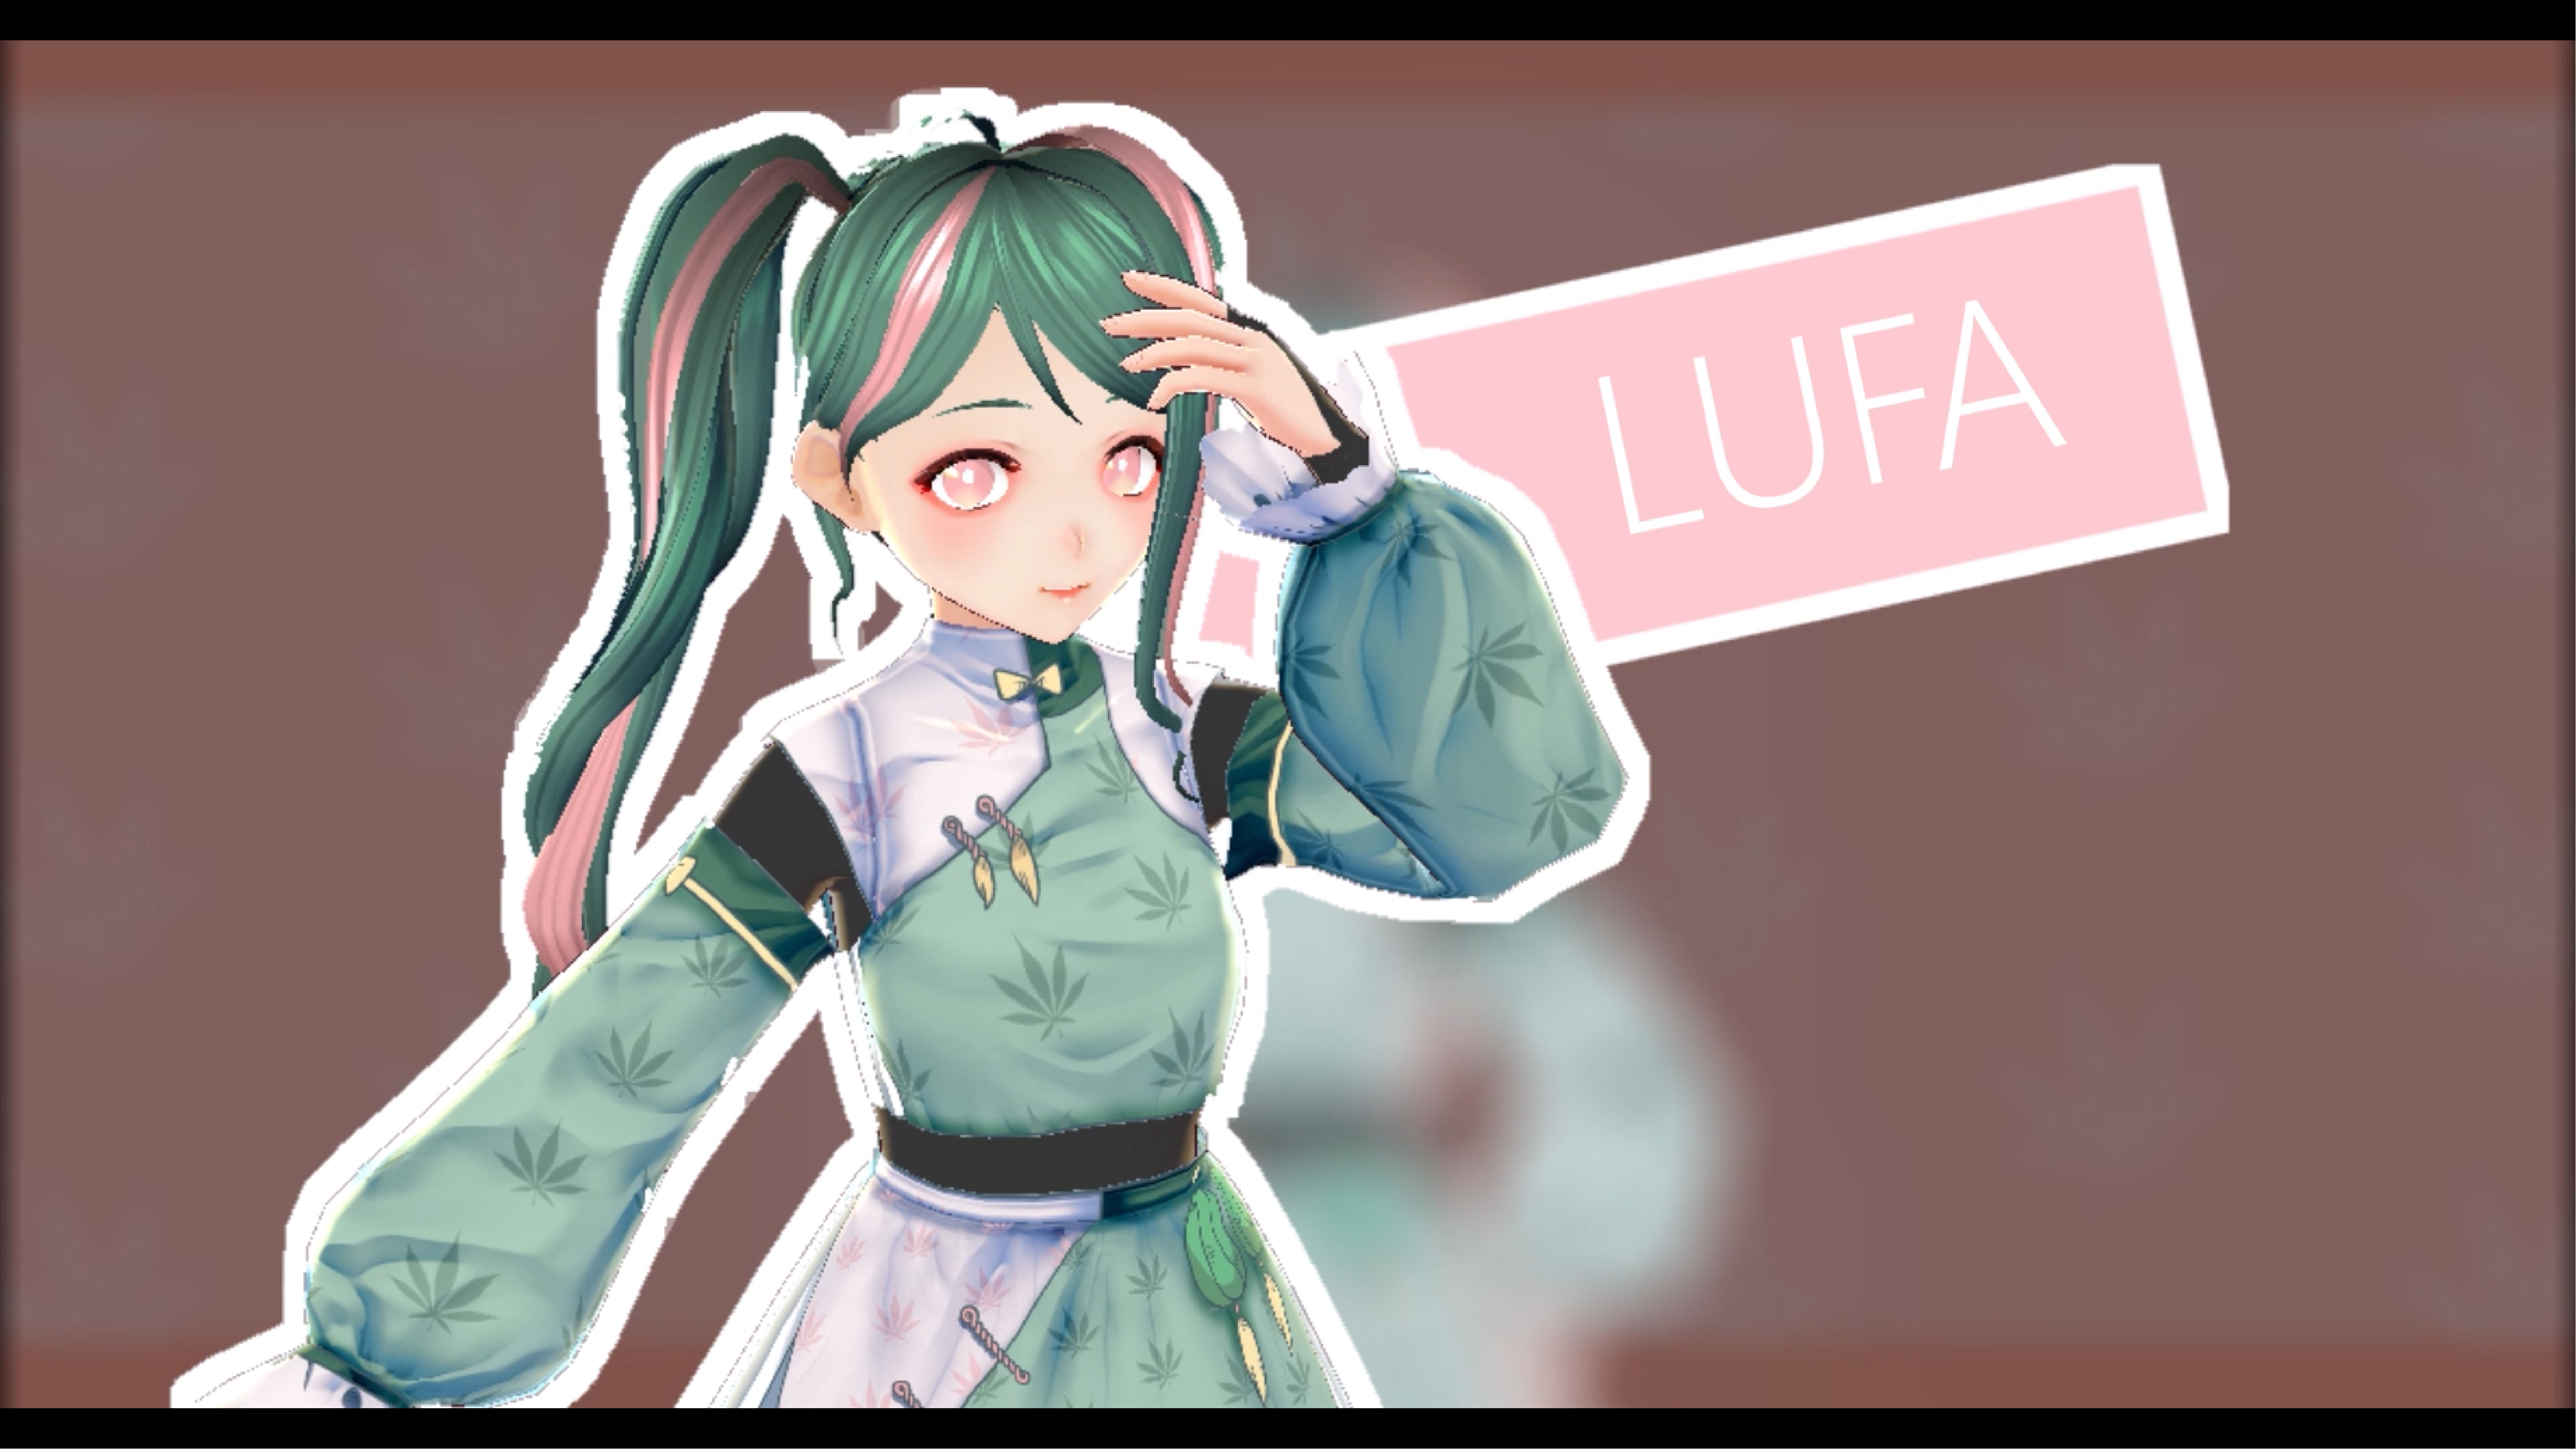 数媒系同学创作的虚拟虚拟角色「Lufa」。